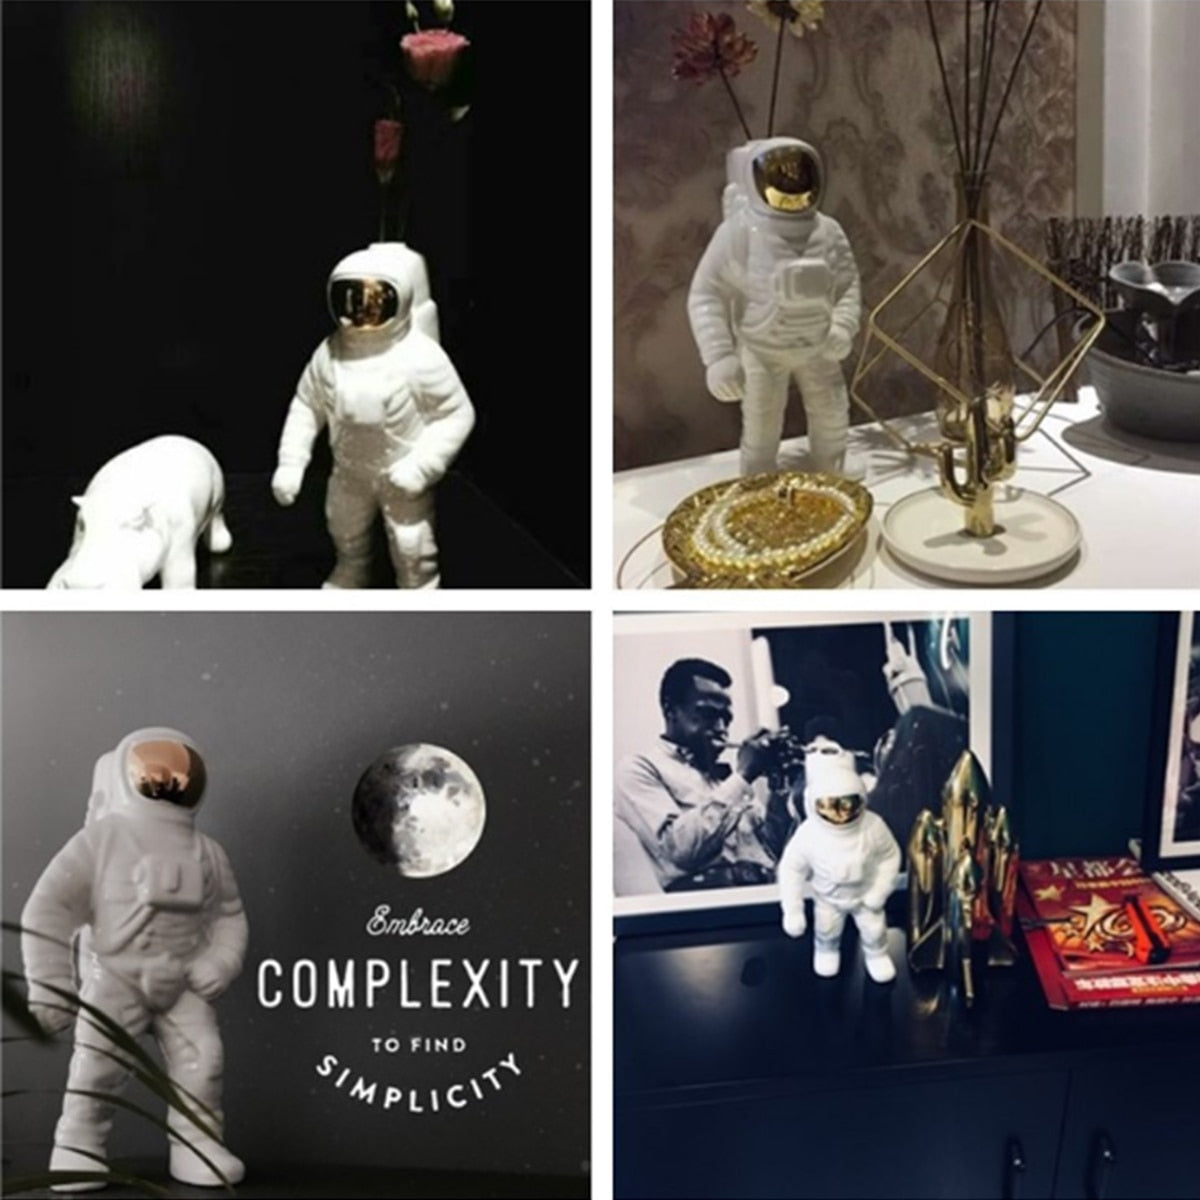 ゴールドスペースマン彫刻宇宙飛行士セラミック花瓶クリエイティブモダン宇宙飛行士モデル飾り像庭テーブルトップホームデコレーション